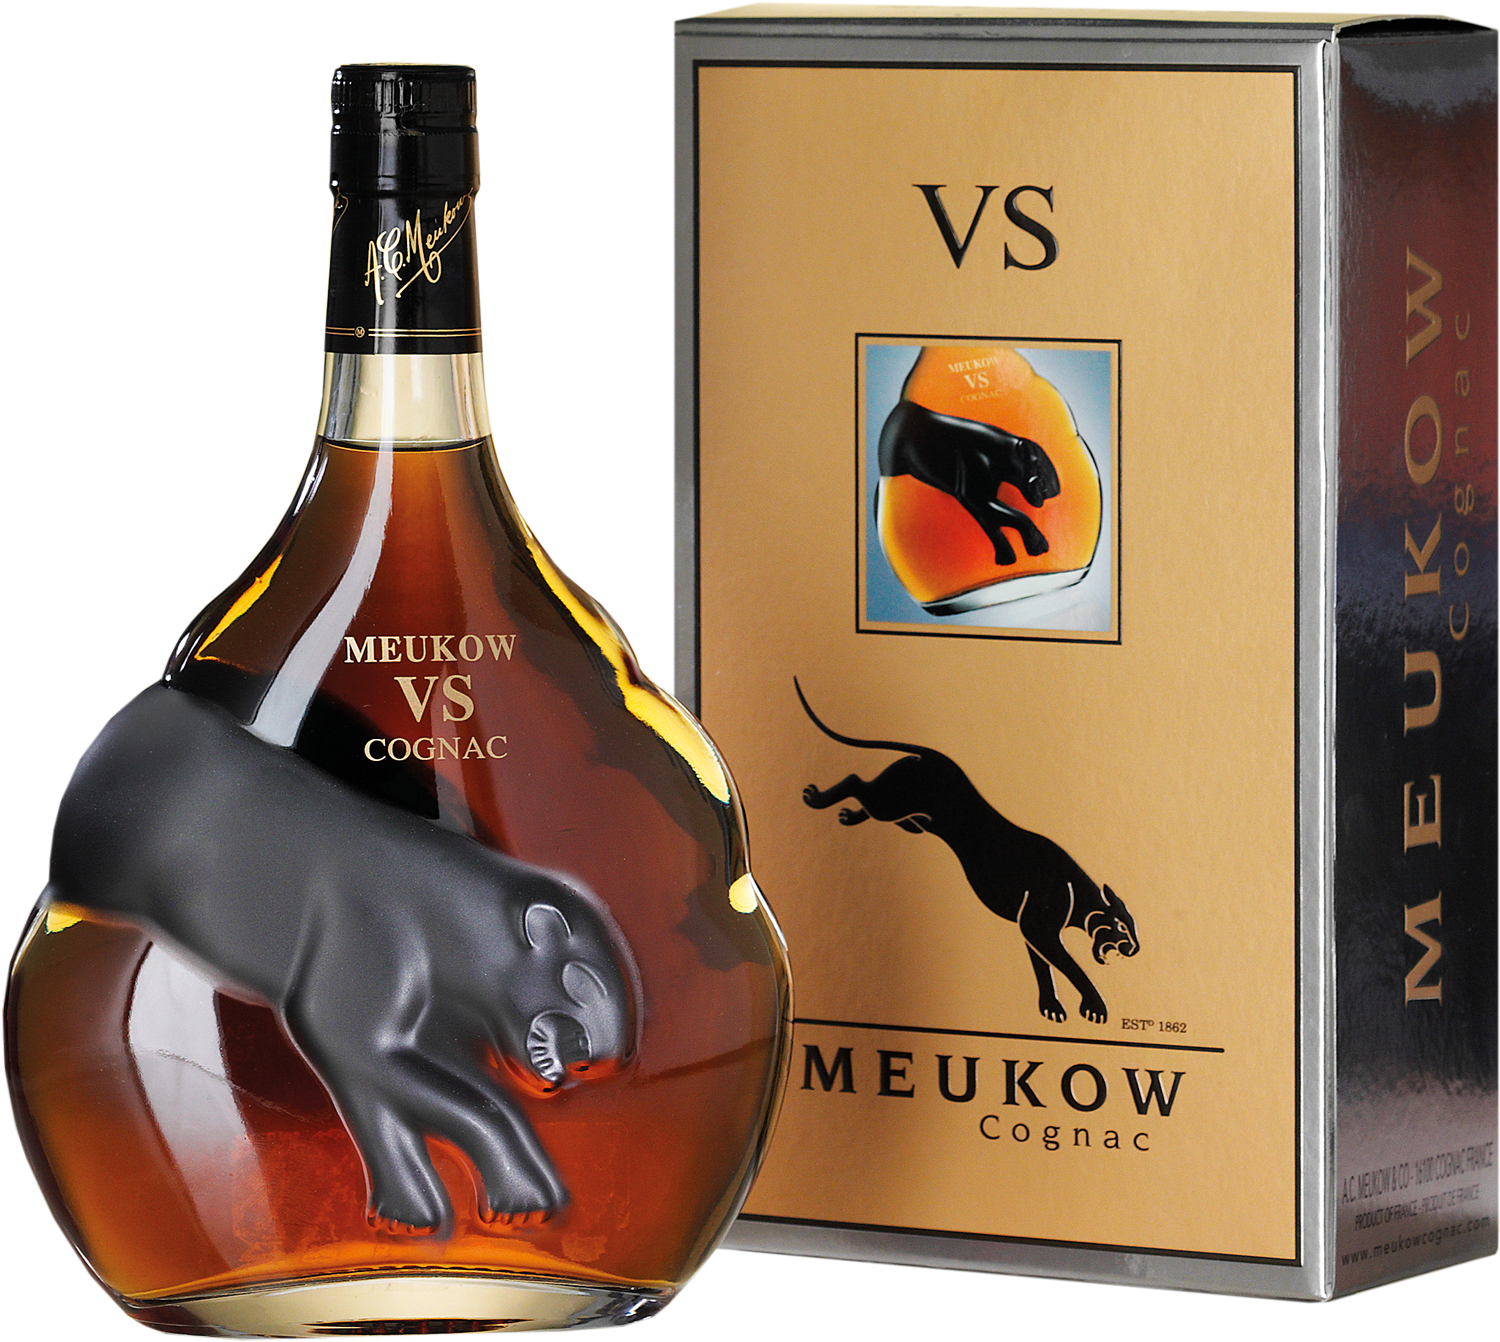 Коньяк cognac купить. Meukow Cognac. Коньяк Меуков vs. Коньяк Meukow vs. Meukow Cognac vs 0.7.